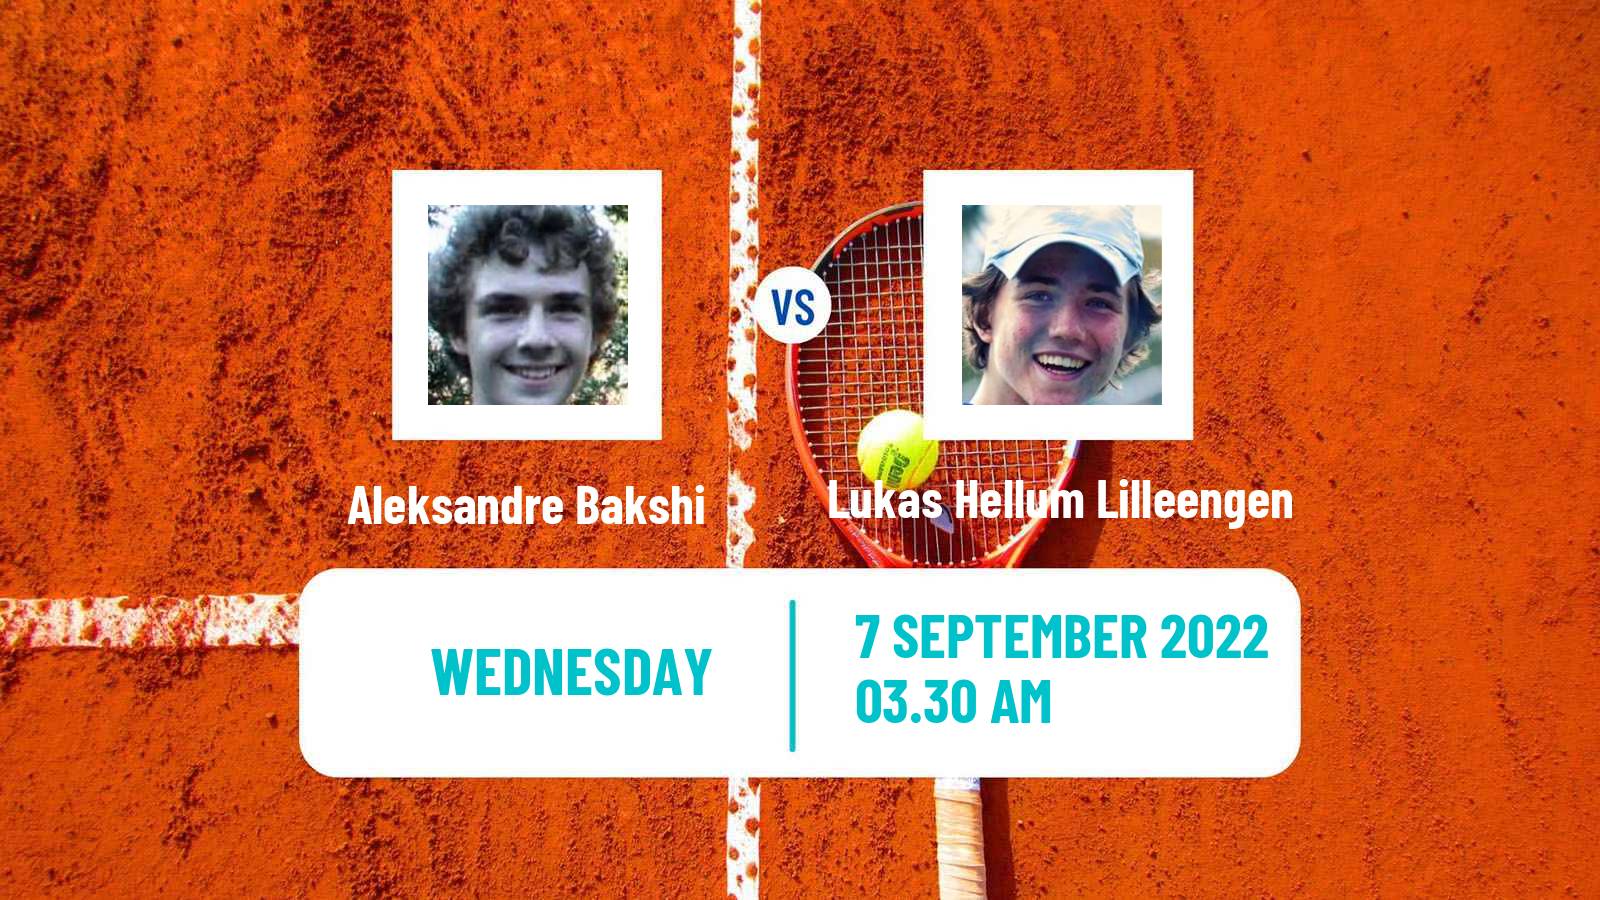 Tennis ITF Tournaments Aleksandre Bakshi - Lukas Hellum Lilleengen